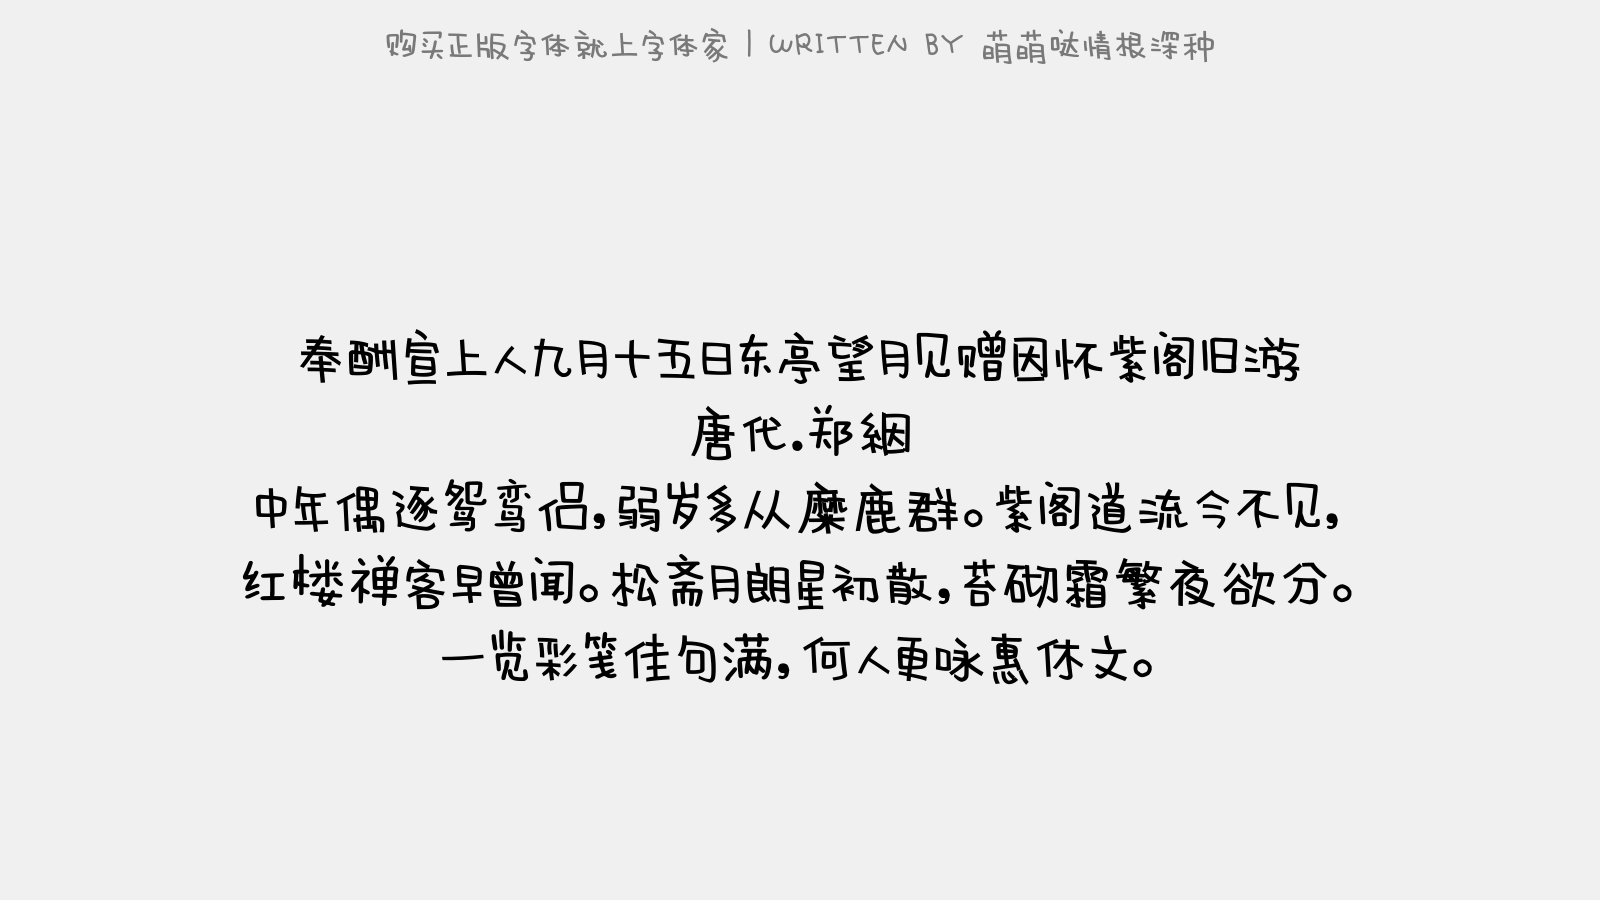 萌萌哒情根深种免费字体下载 中文字体免费下载尽在字体家